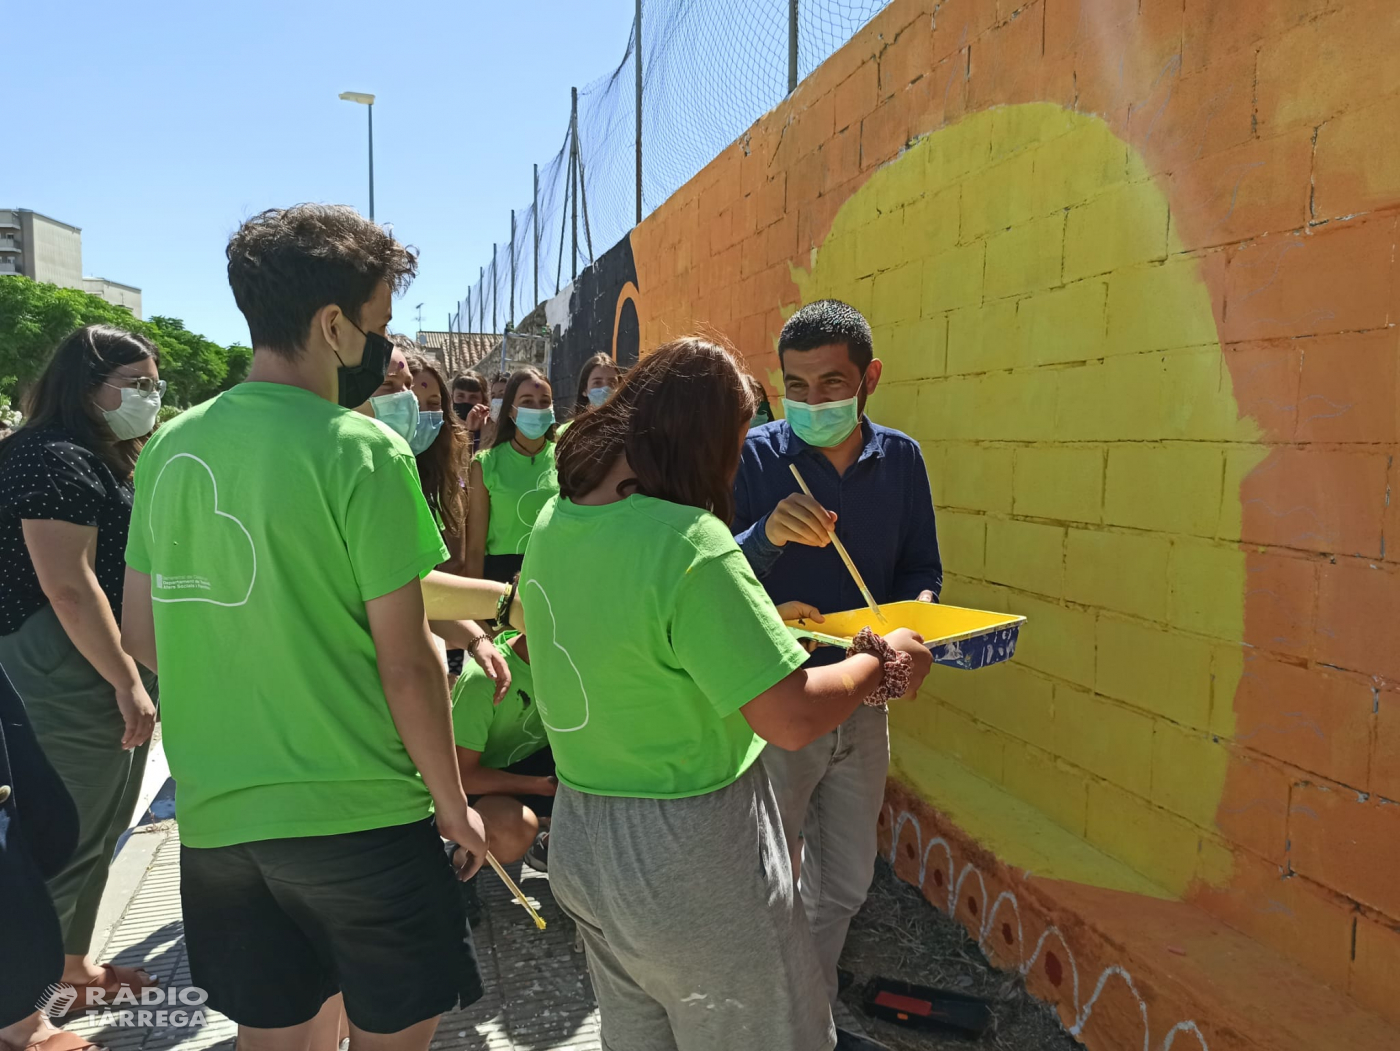 El conseller Chakir el Homrani visita el camp de treball 'Graffitis inclusius' a Cervera gestionat per la cooperativa Lleure Quàlia del Grup Alba